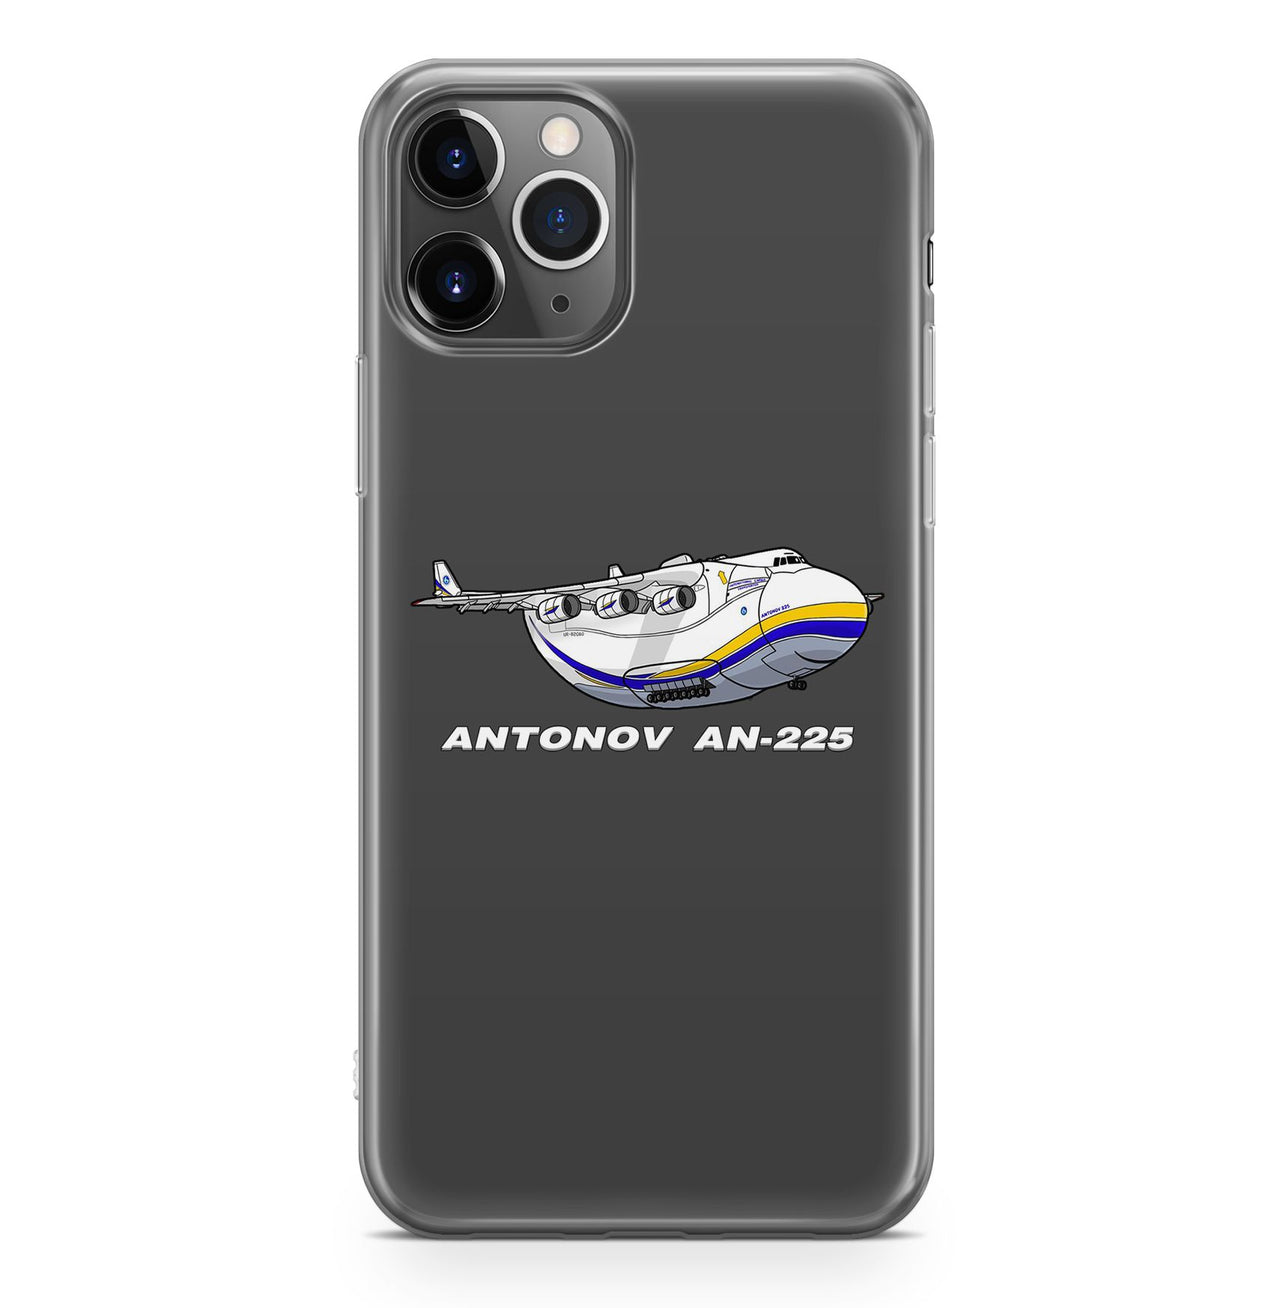 Antonov AN-225 (17) Designed iPhone Cases